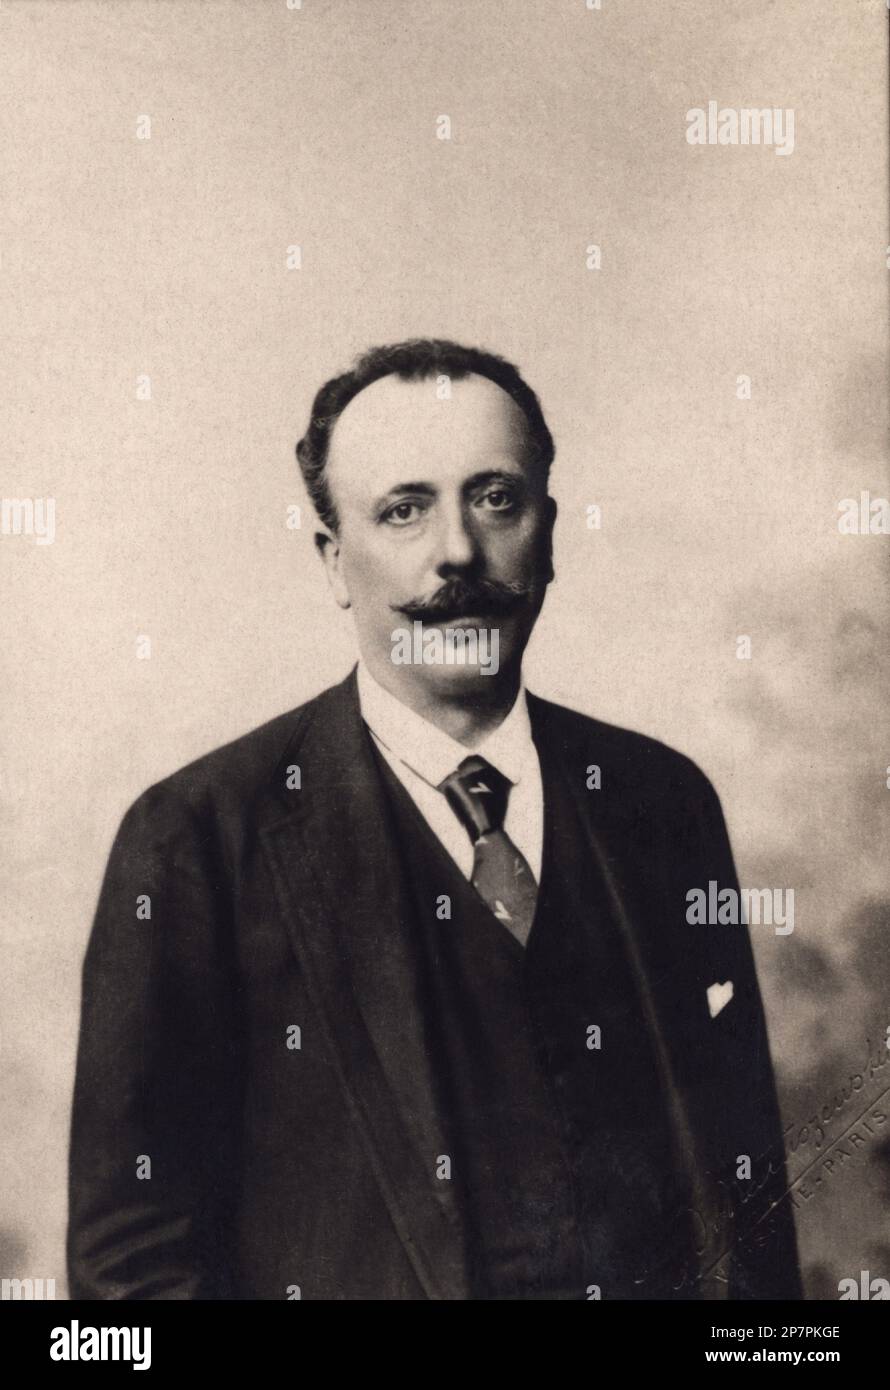 1890 c, FRANCIA : Comte Adrien Albert Marie DE MUN (1841 – 1914) è stato un . A Academie francaise dal 1897 al 1914 . - POLITICO - POLITICA - POLITICA - foto storiche - foto storica - ritratto - ritratto - baffi - baffi - cravatta - colletto - NOBILI - NOBILTÀ - nobiltà - Conte ---- Archivio GBB Foto Stock